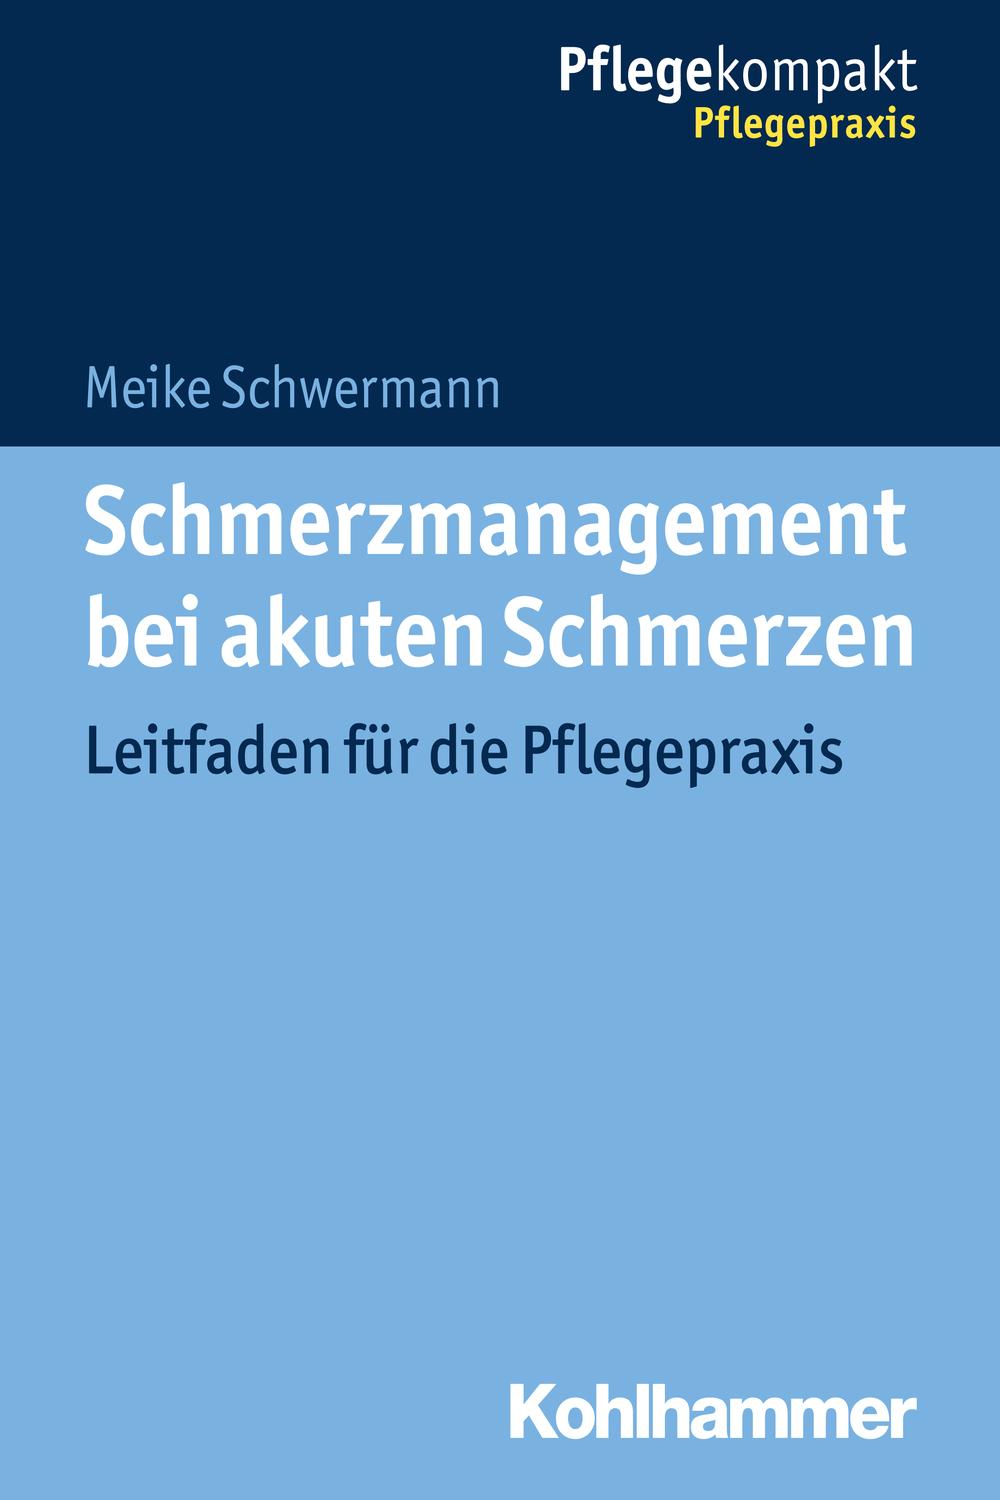 Schmerzmanagement bei akuten Schmerzen - Meike Schwermann,,